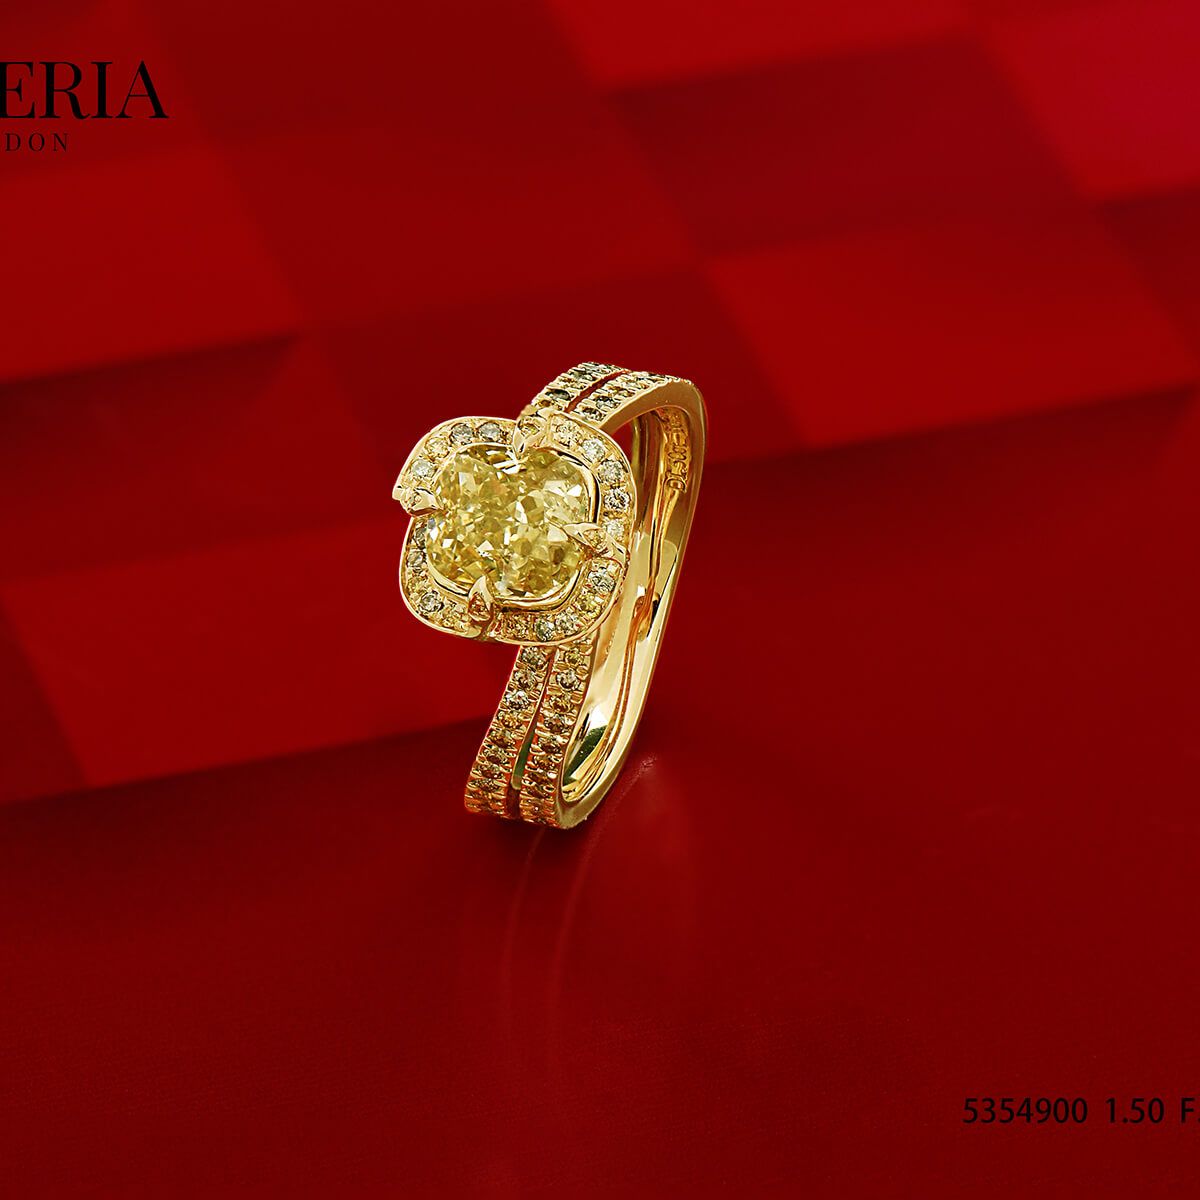 浅 呈褐色的 黄色 钻石 戒指, 1.50 重量 (2.22 克拉 总重), 枕型 形状, EG_Lab 认证, J6026292229